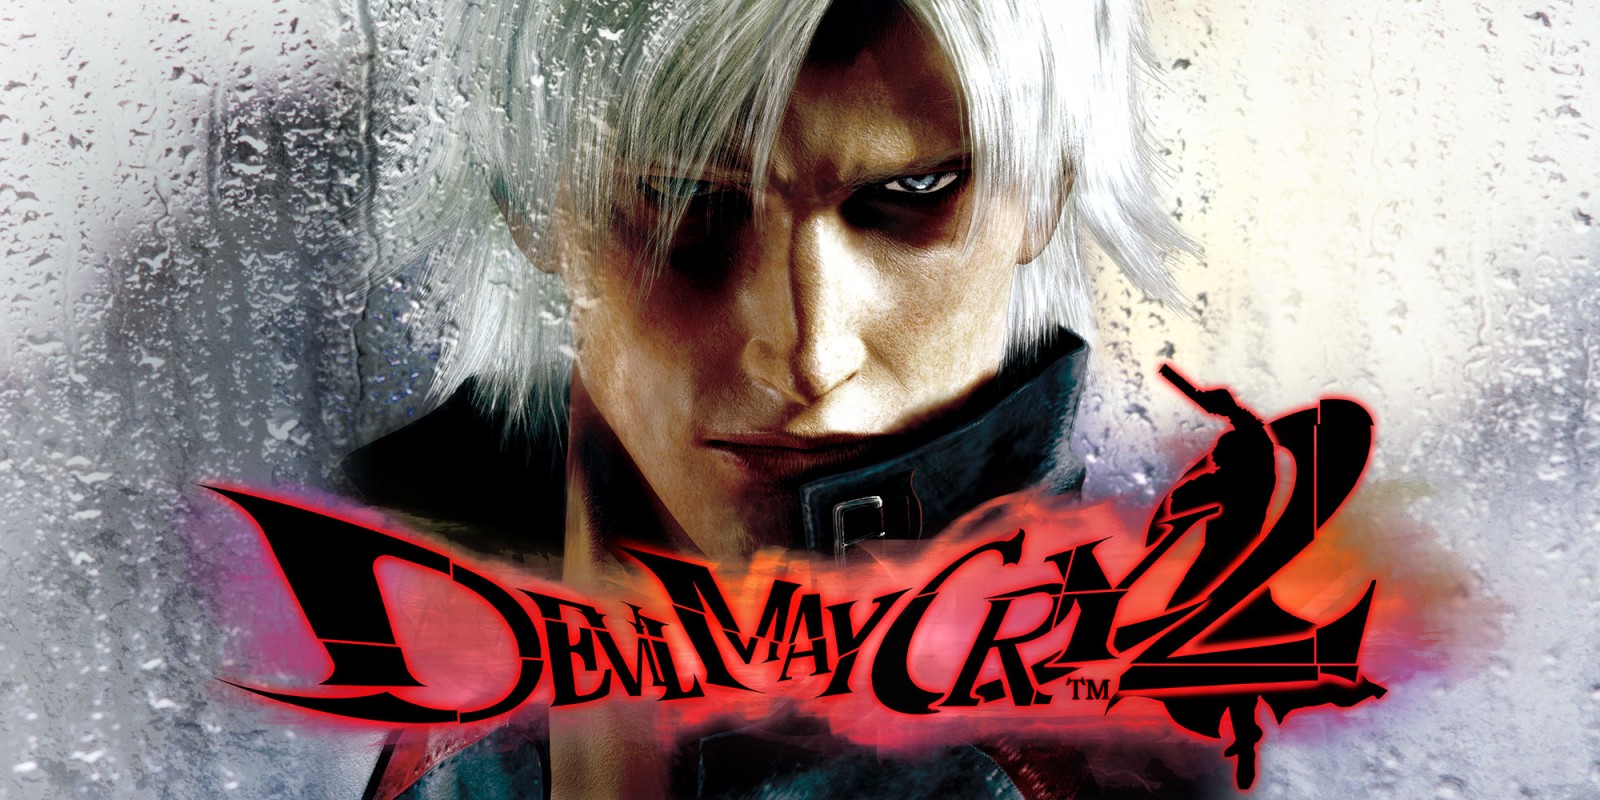 Dante Devil My Cry DMC game impressão 3D